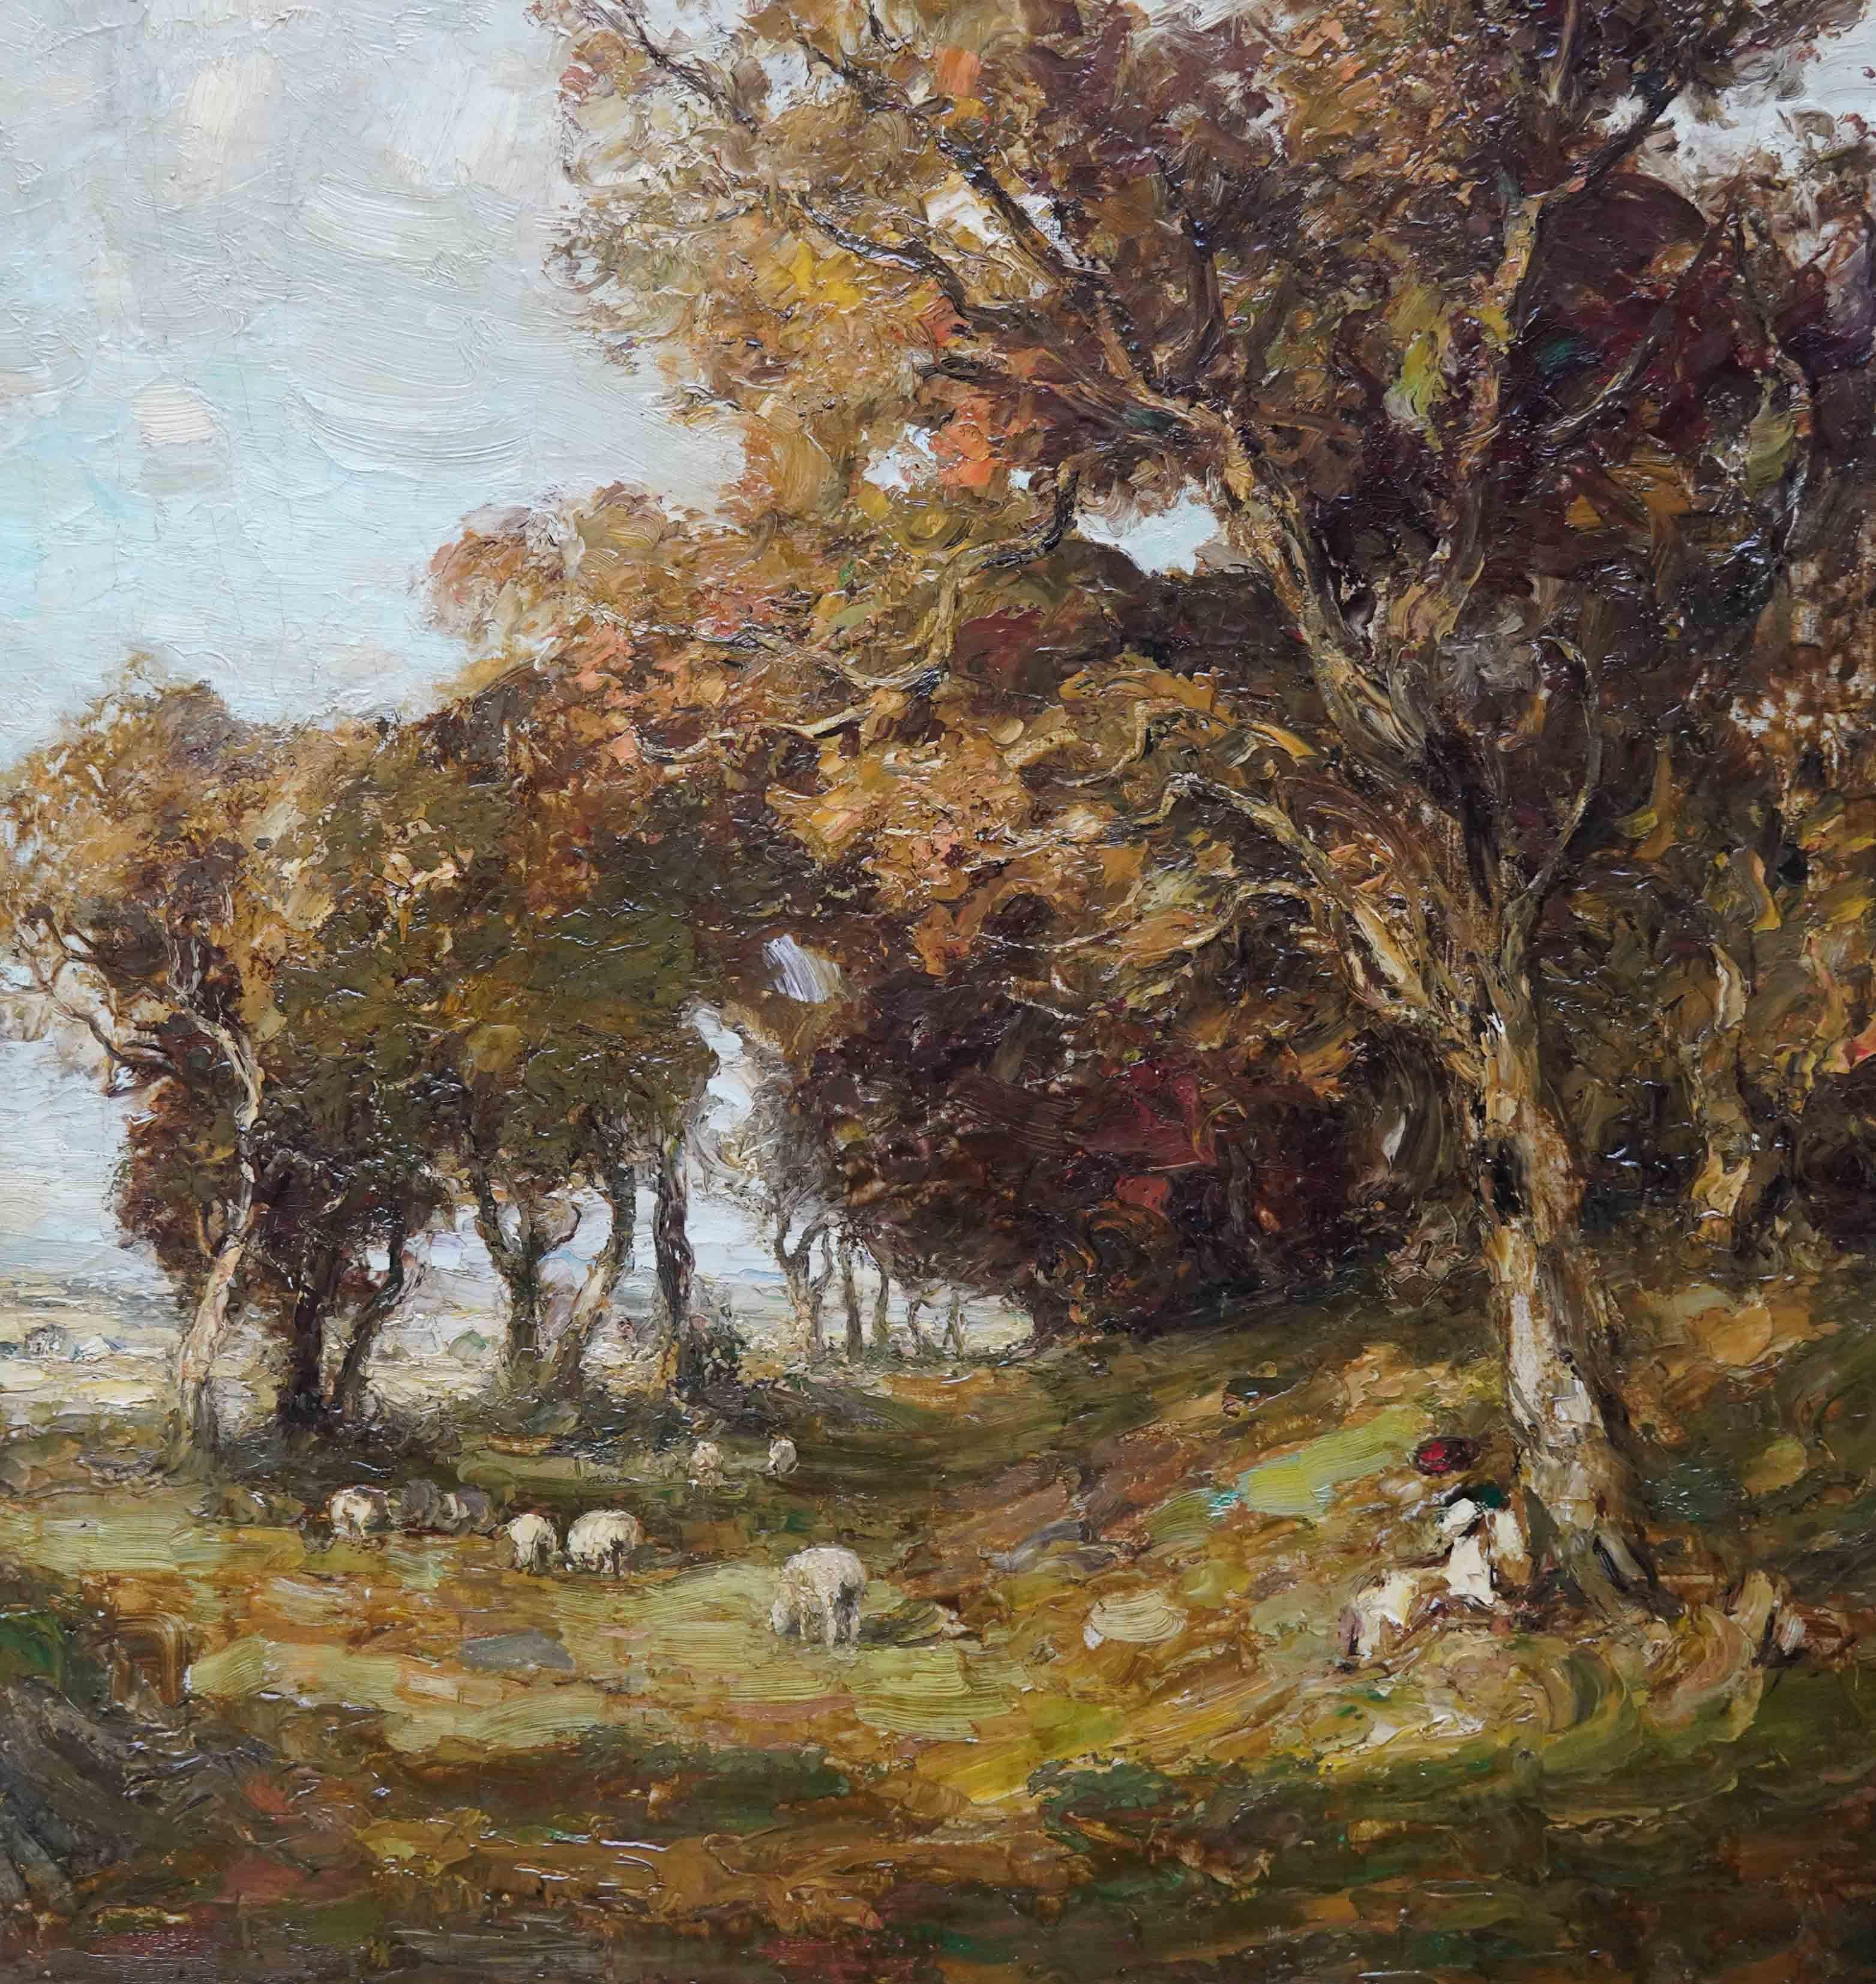 Landschaft mit Schafen – schottisches Ölgemälde von Kirkcudbright, 19. Jahrhundert  (Impressionismus), Painting, von William Mouncey